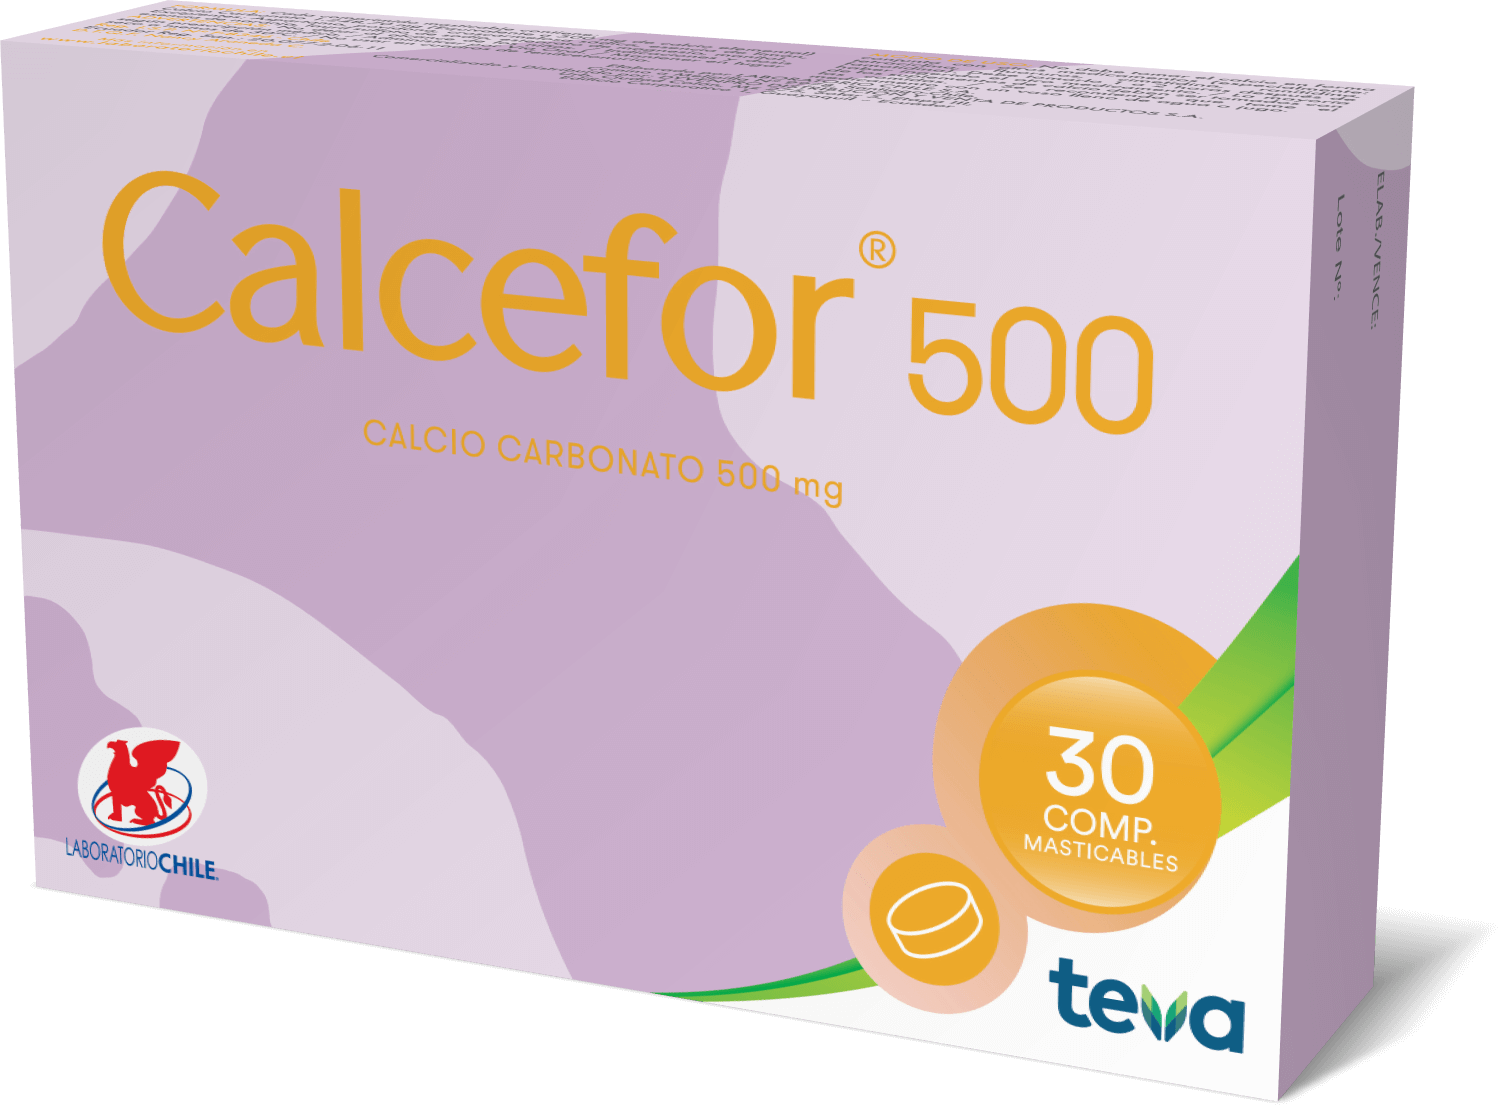 Calcefor 500 - Laboratorio Chile